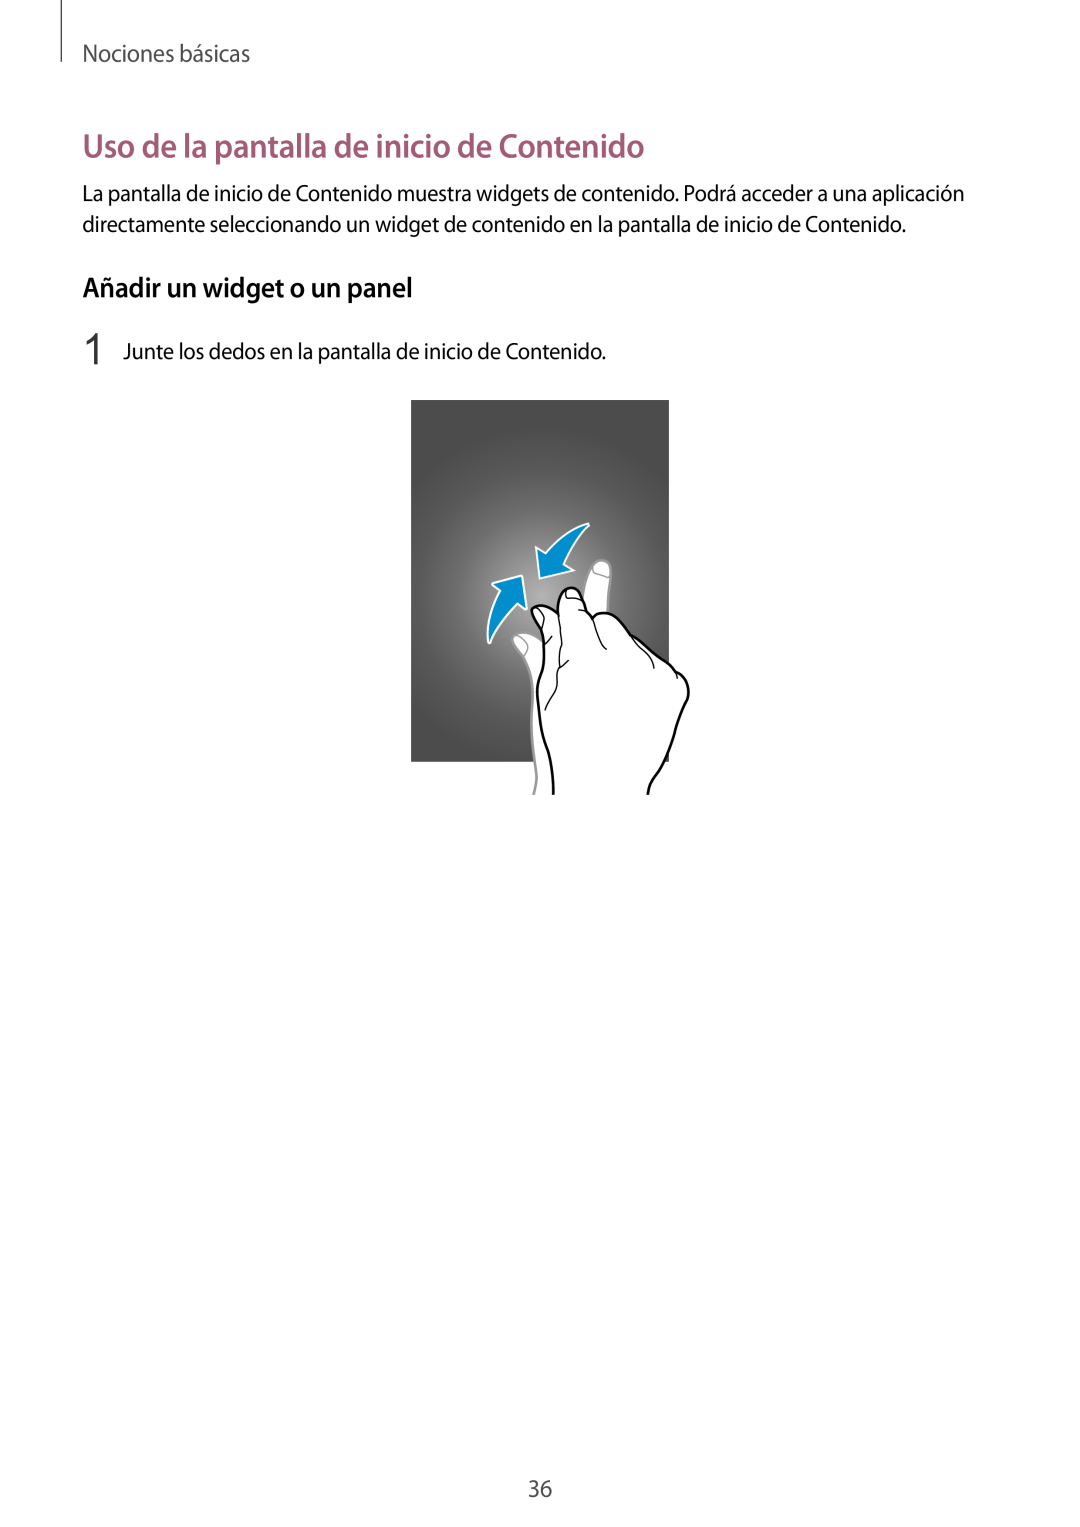 Samsung SM-T320XZWAPHE manual Uso de la pantalla de inicio de Contenido, Añadir un widget o un panel, Nociones básicas 